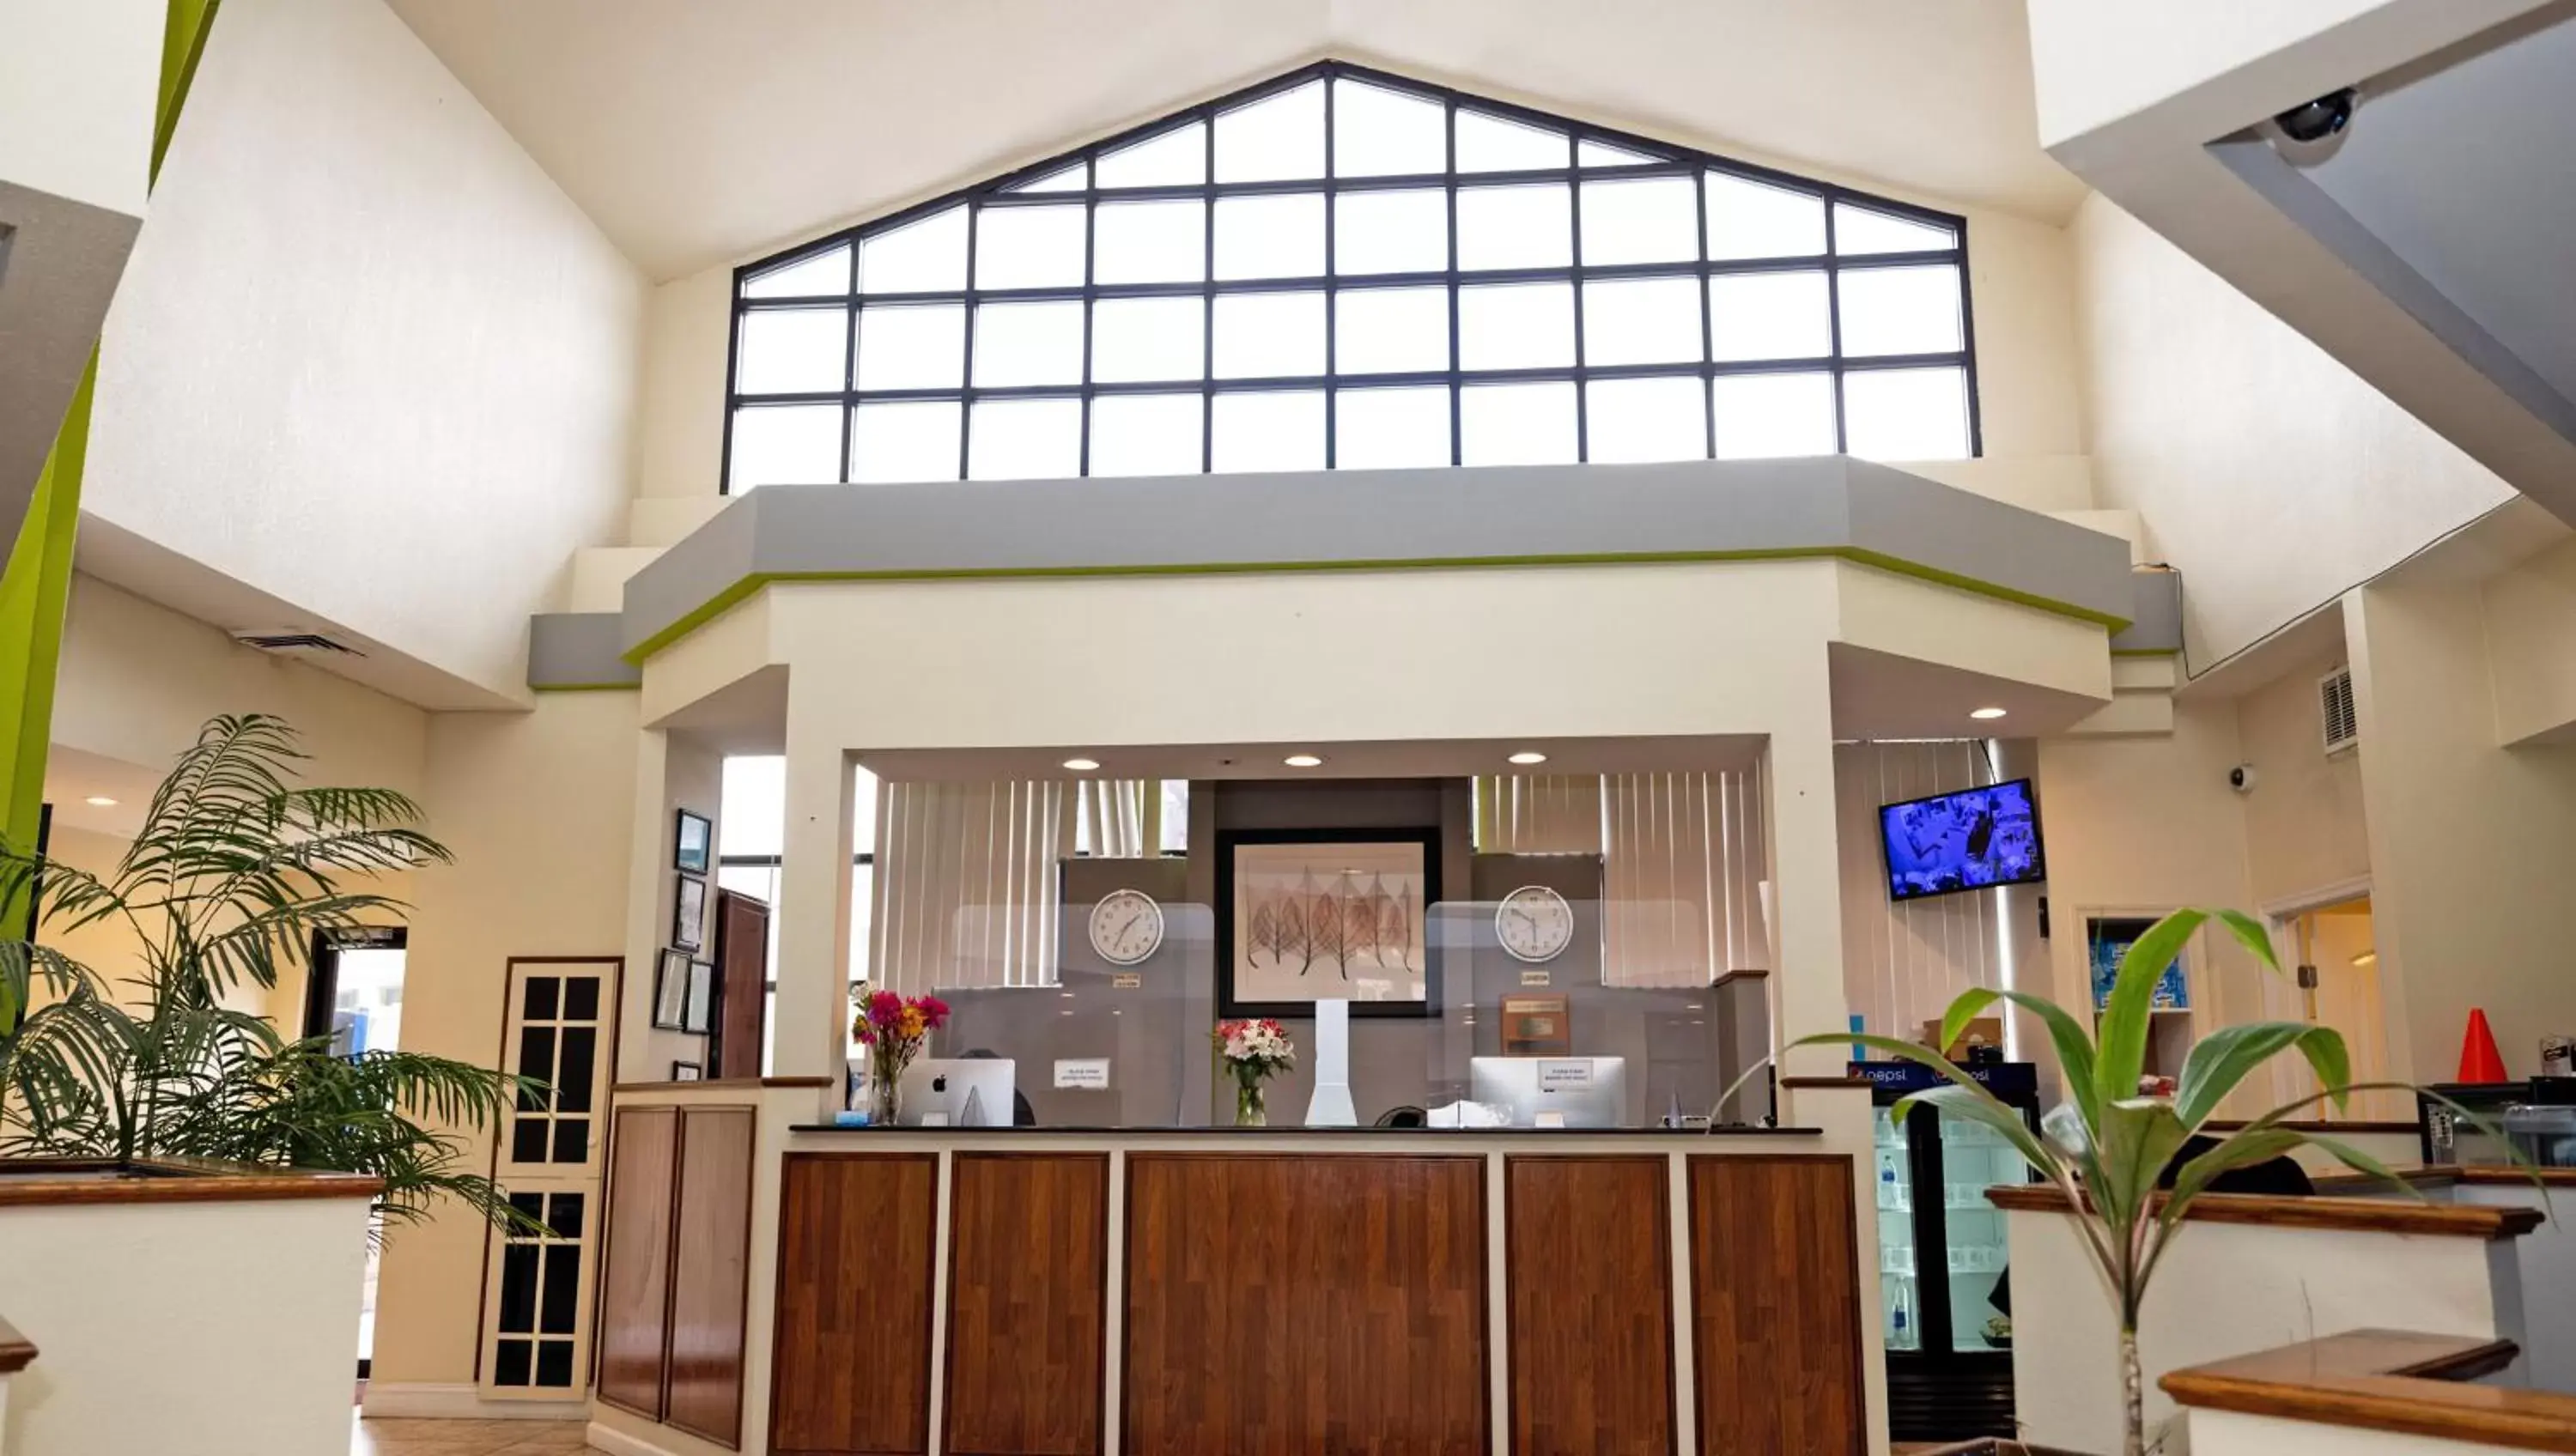 Lobby or reception, Lobby/Reception in Magnuson Hotel Virginia Beach